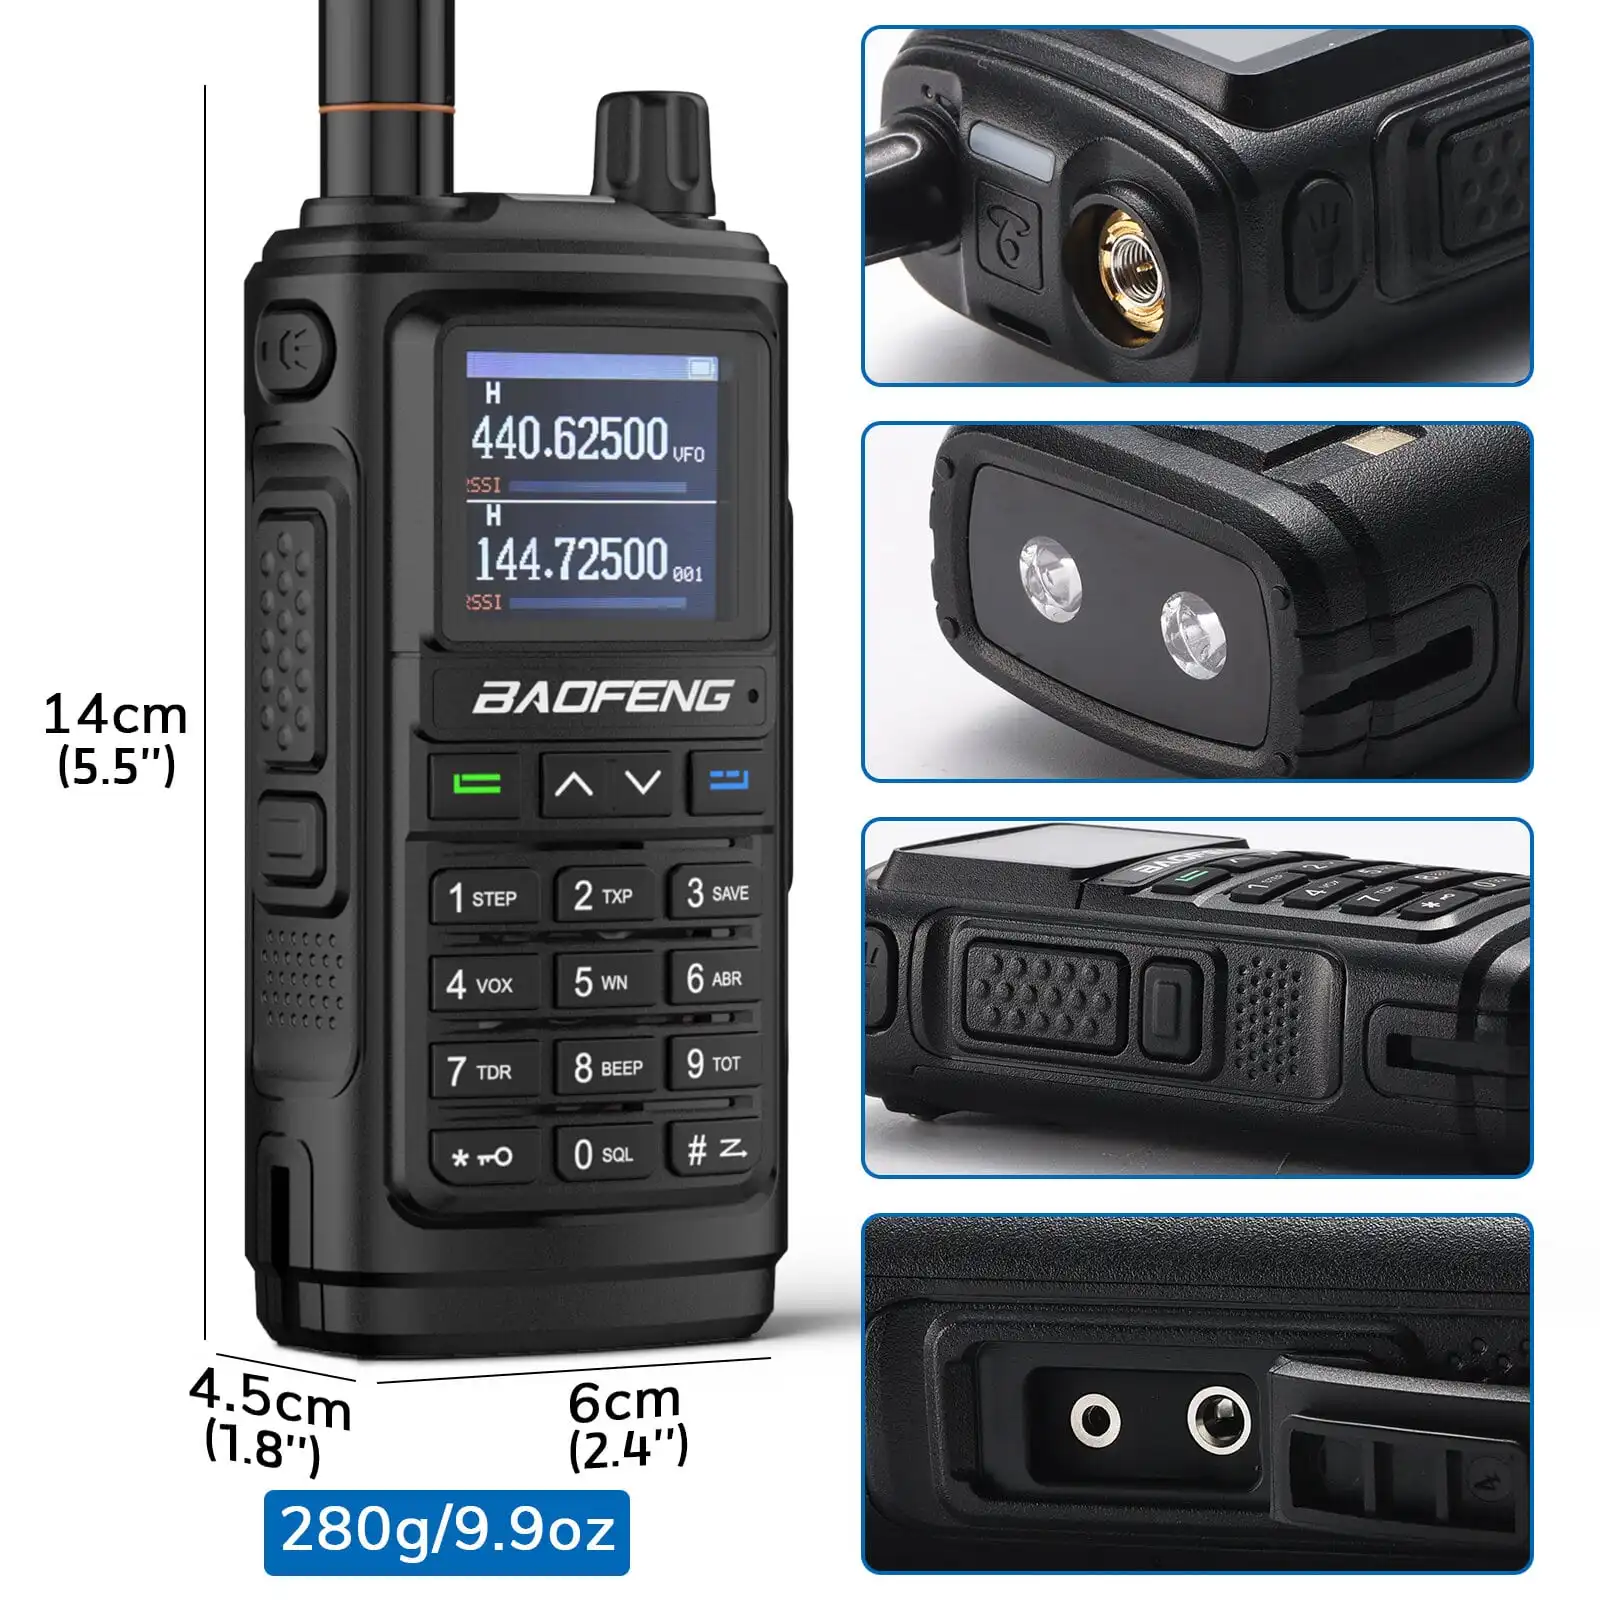 Baofeng UV-5R Two Way Radio Dual Band 144-148/420-450Mhz Walkie Talkie  1800mAh Li-ion Battery(Black)